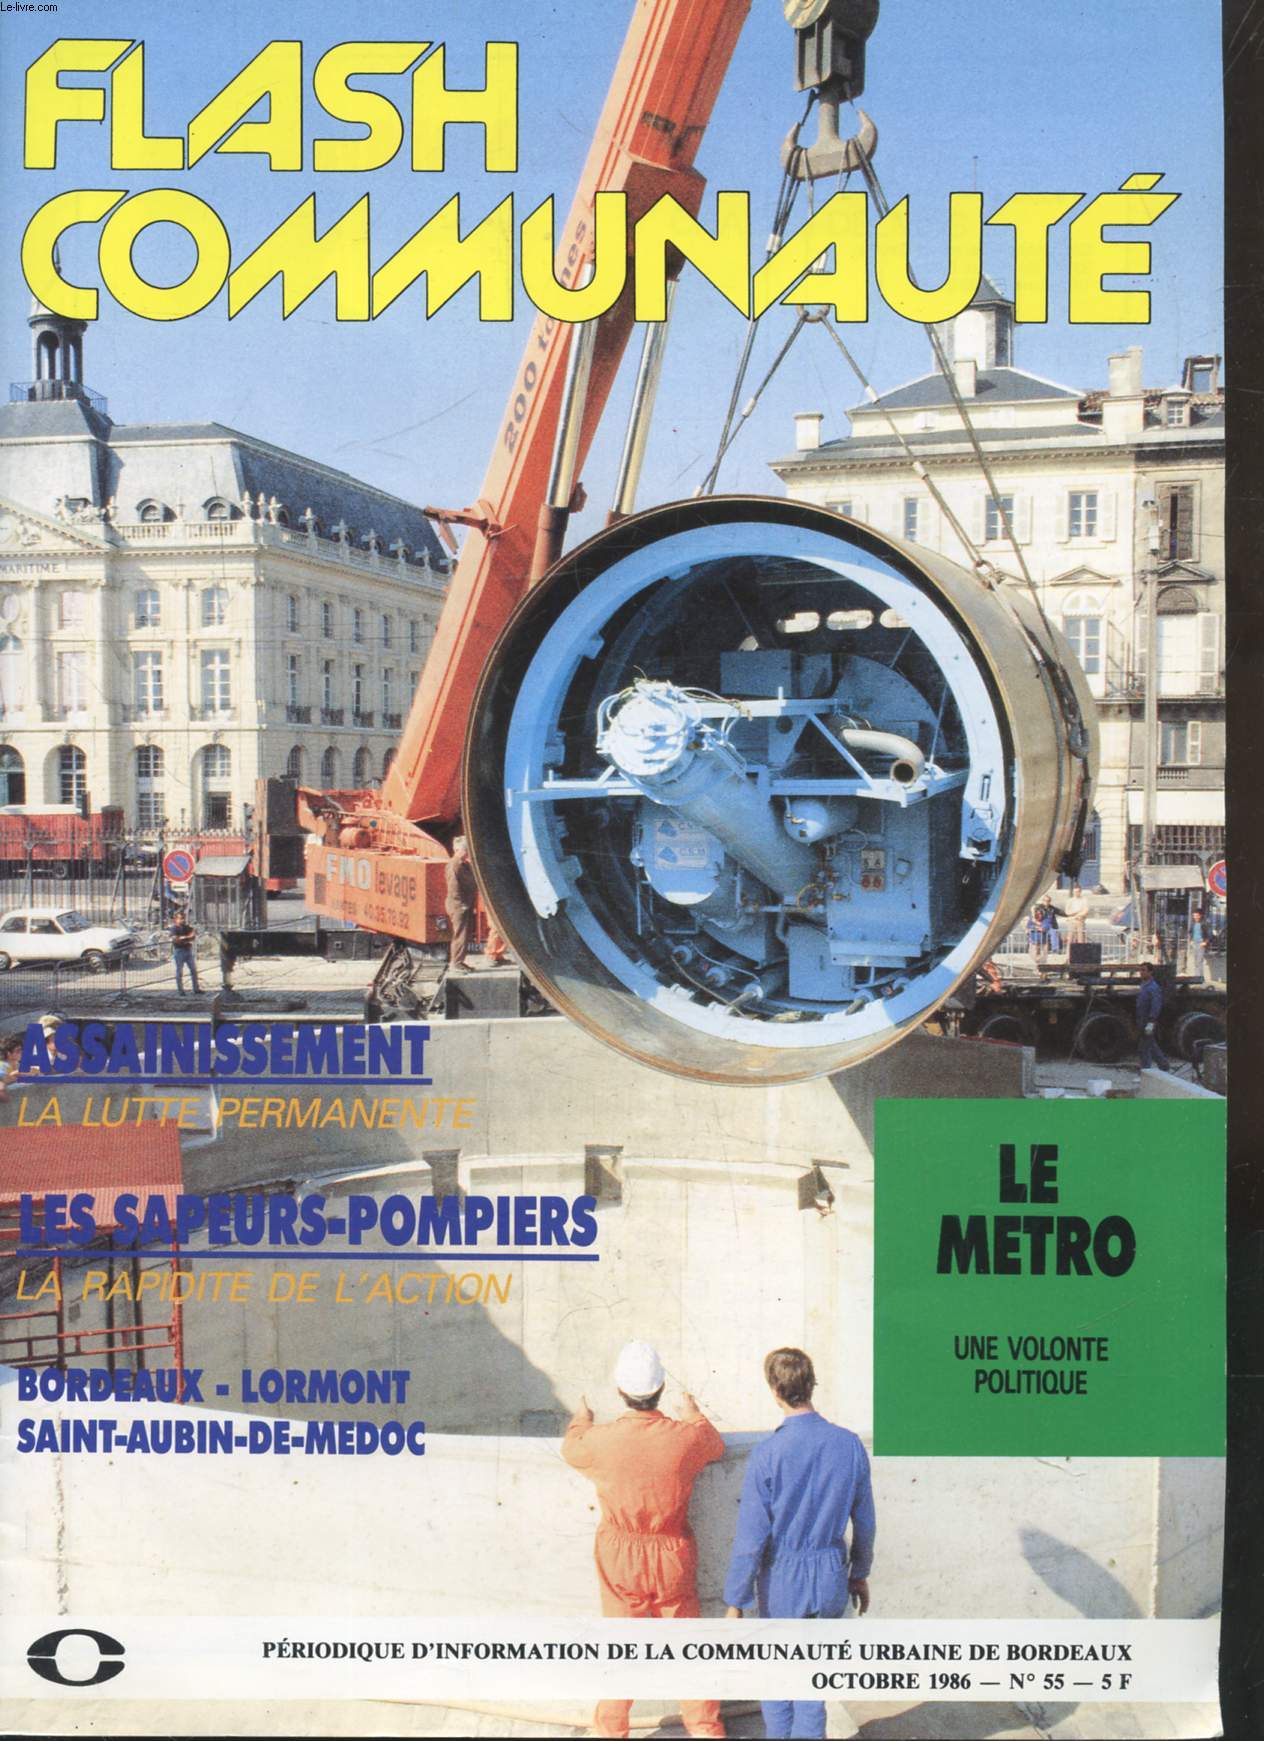 FLASH COMMUNAUTE - FLASH COMMUNAUTE - PERIODIQUE D'INFORMATION DE LA COMMUNAUTE URBAINE DE BORDEAUX - N 55 - OCTOBRE 1986